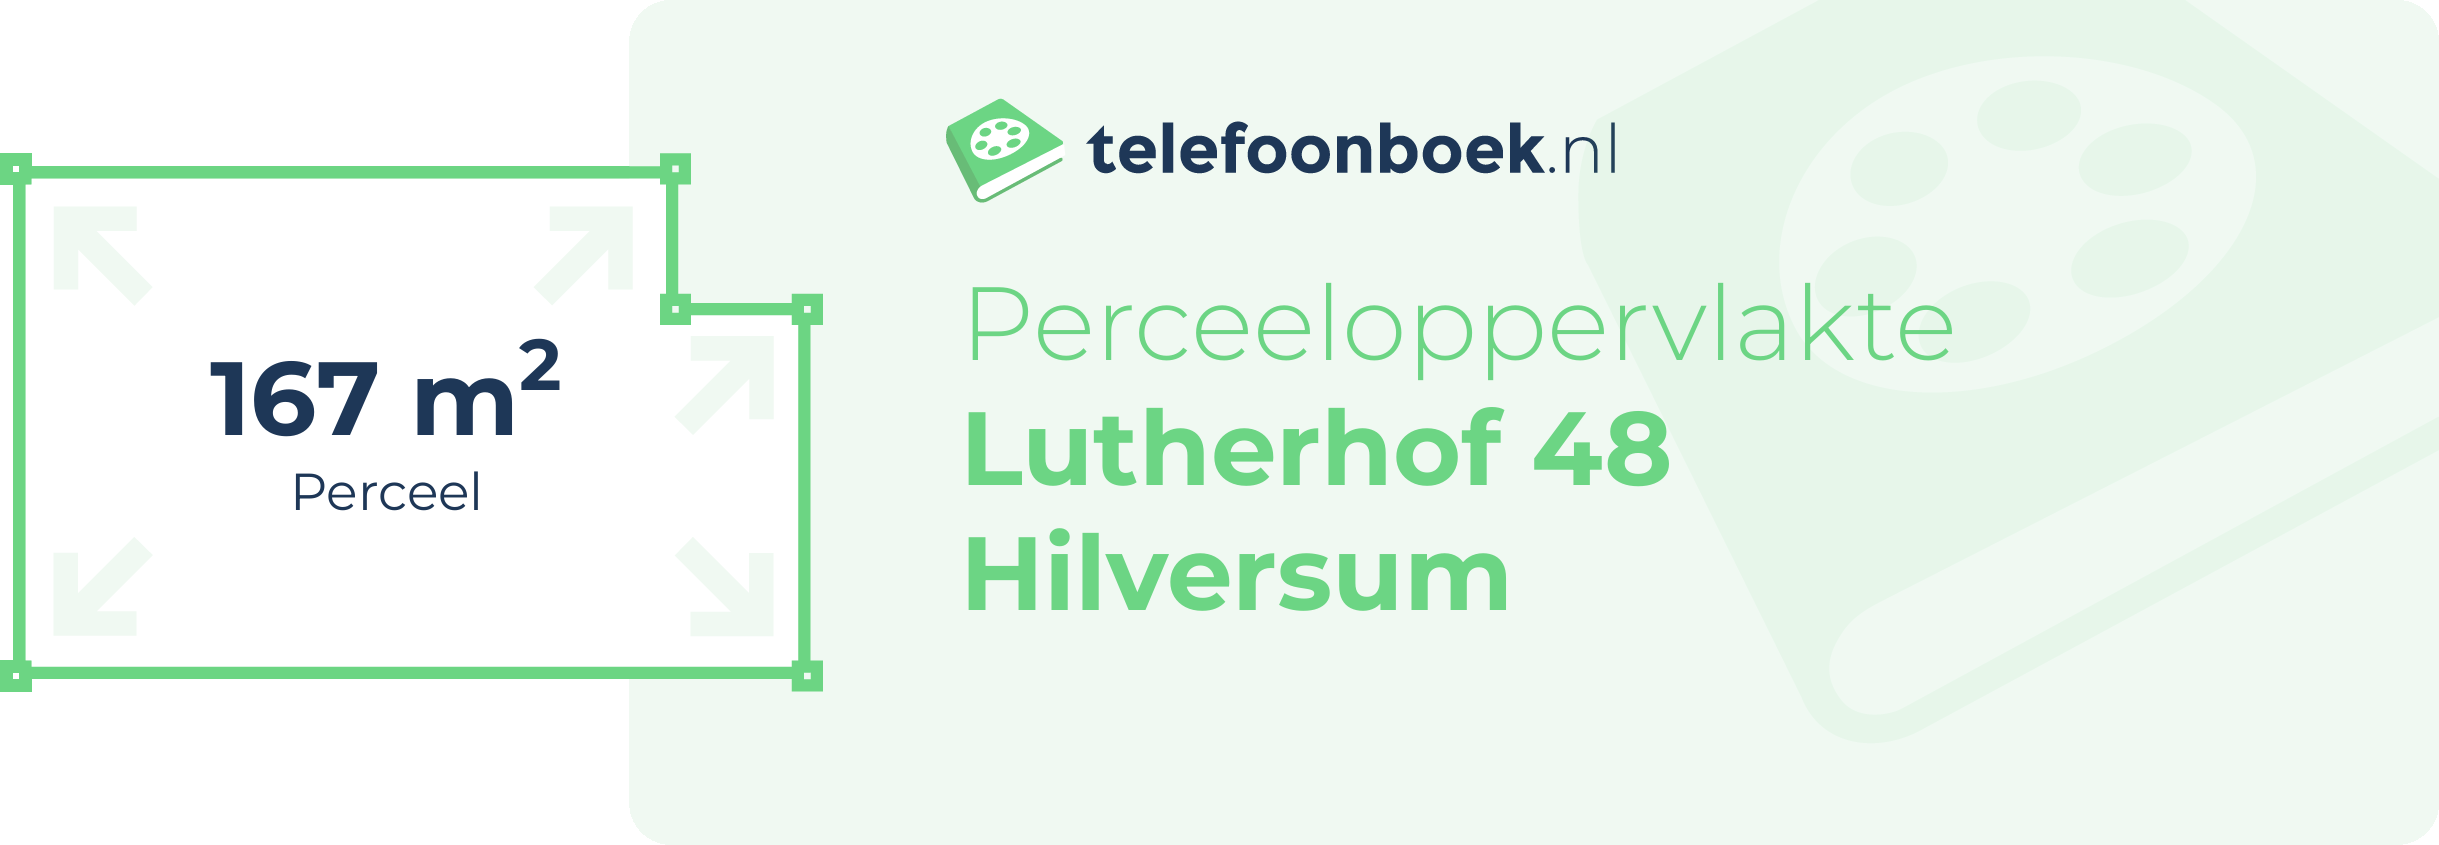 Perceeloppervlakte Lutherhof 48 Hilversum